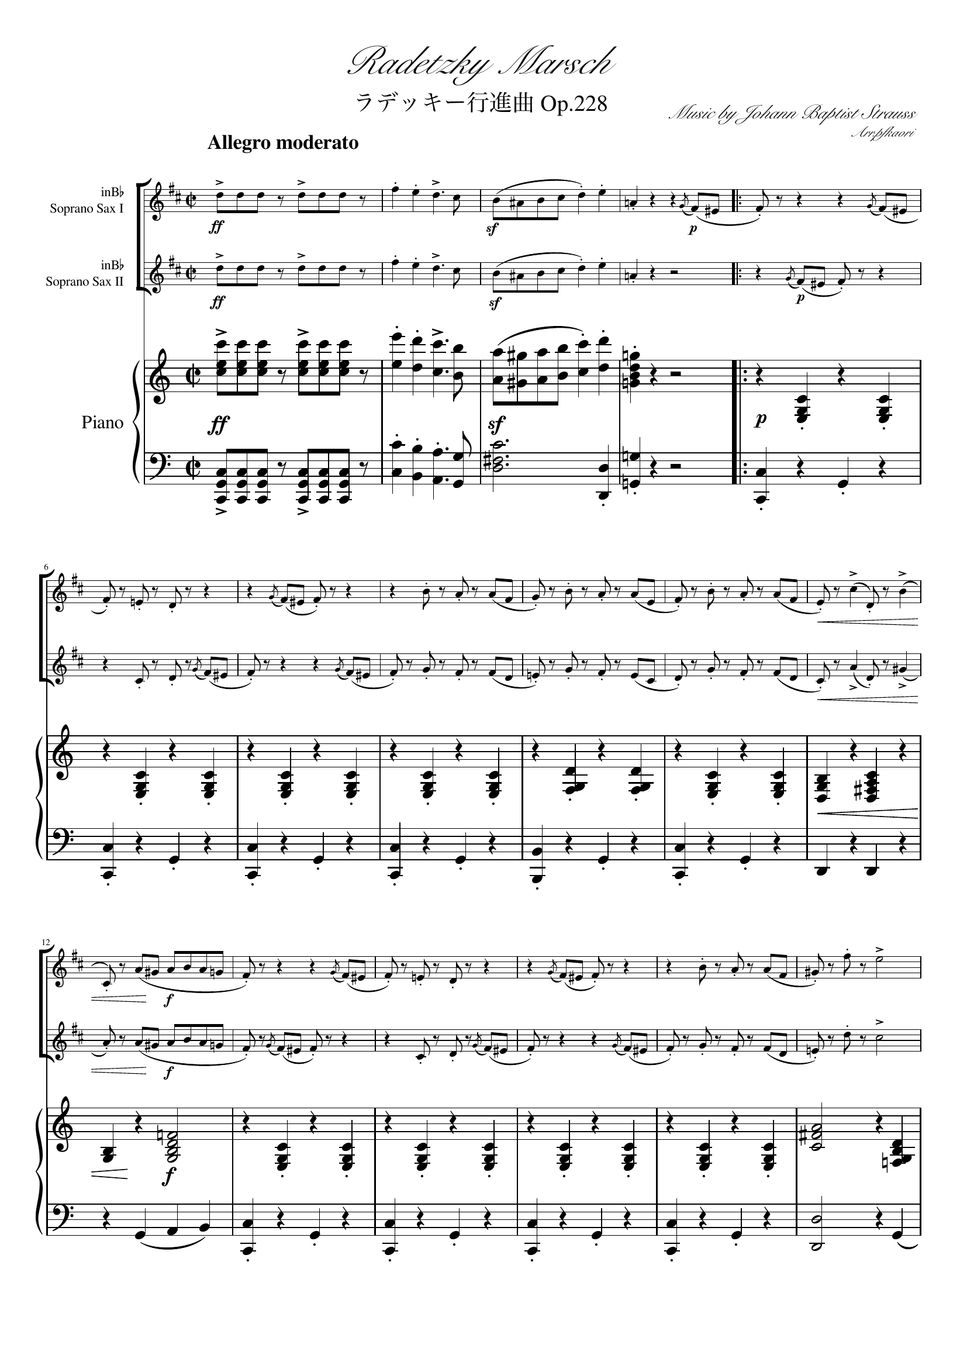 ヨハンシュトラウス1世 - ラデッキー行進曲 (C・ピアノトリオ/ソプラノサックスデュオ) by pfkaori